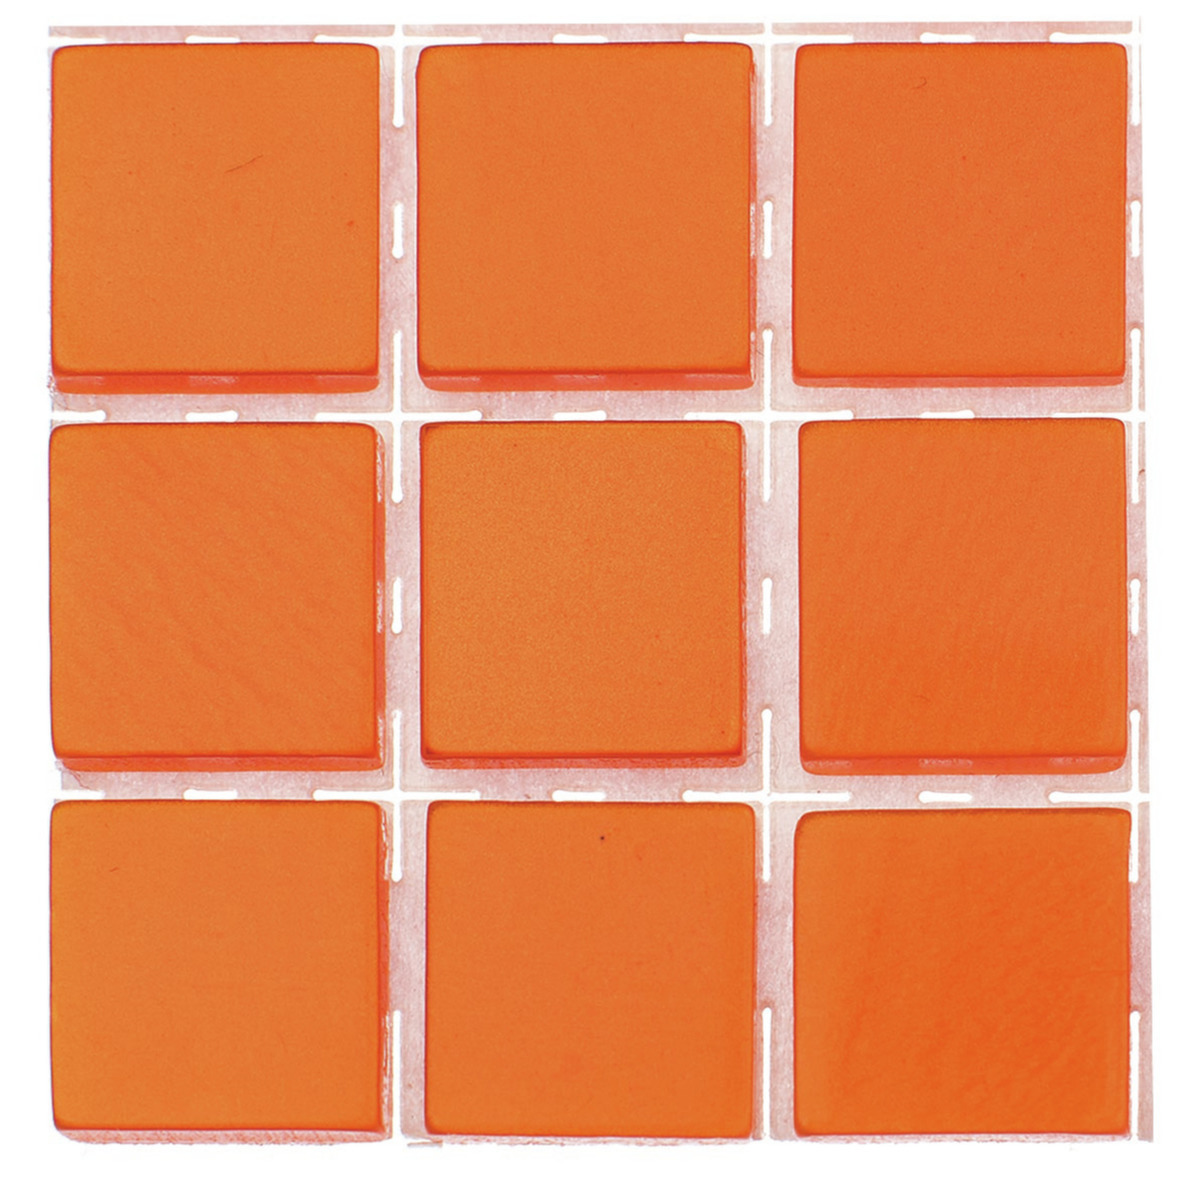 63x stuks mozaieken maken steentjes-tegels kleur oranje 10 x 10 x 2 mm